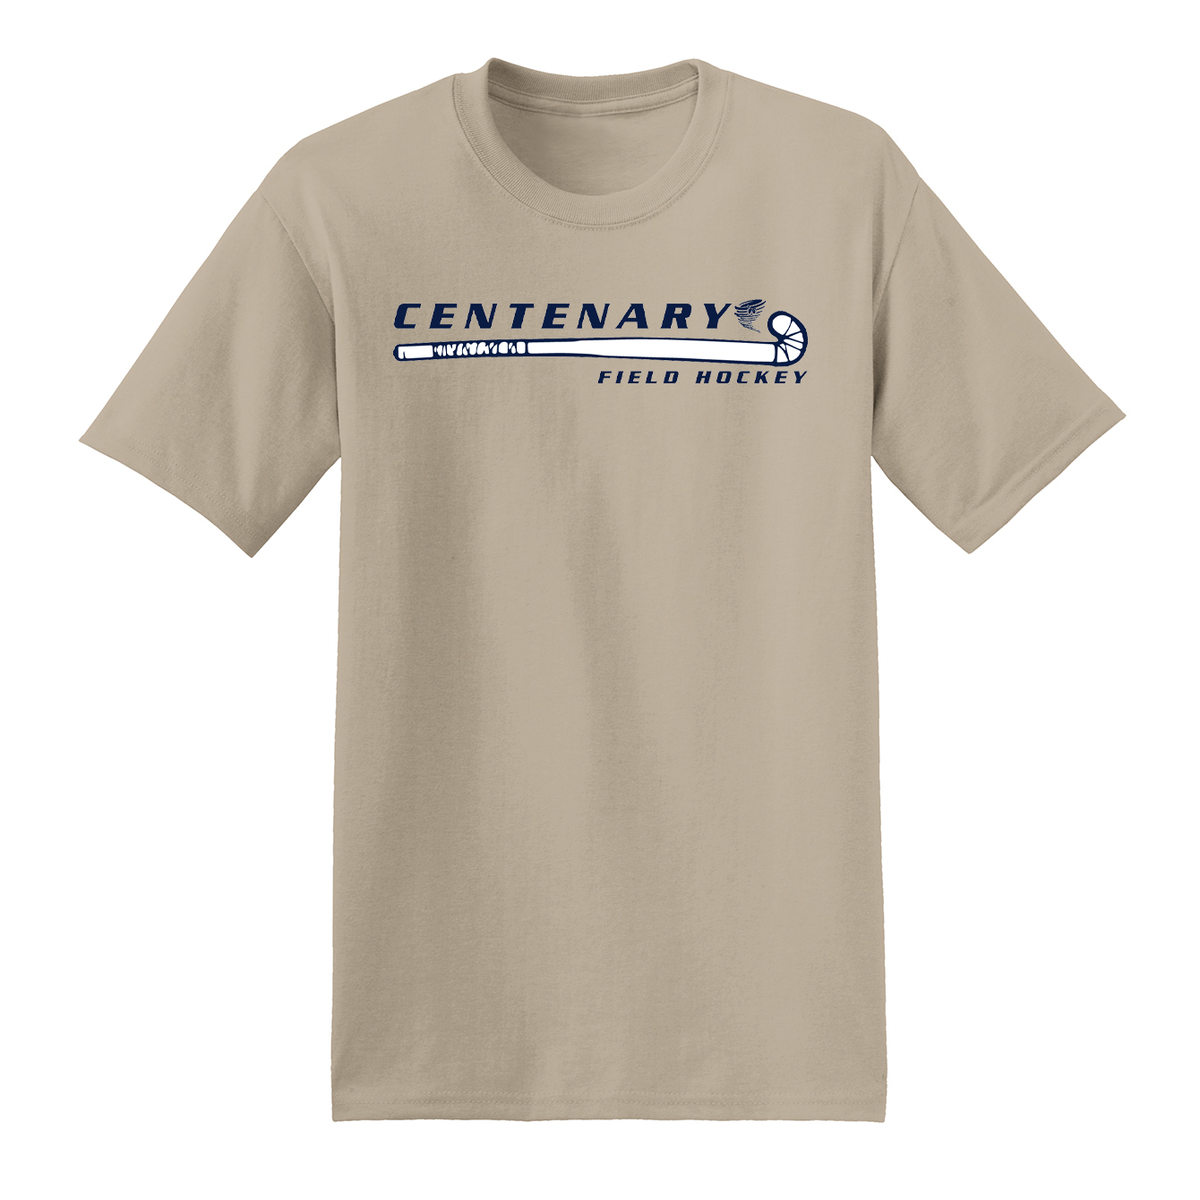 Centenary University Field Hockey T-Shirt